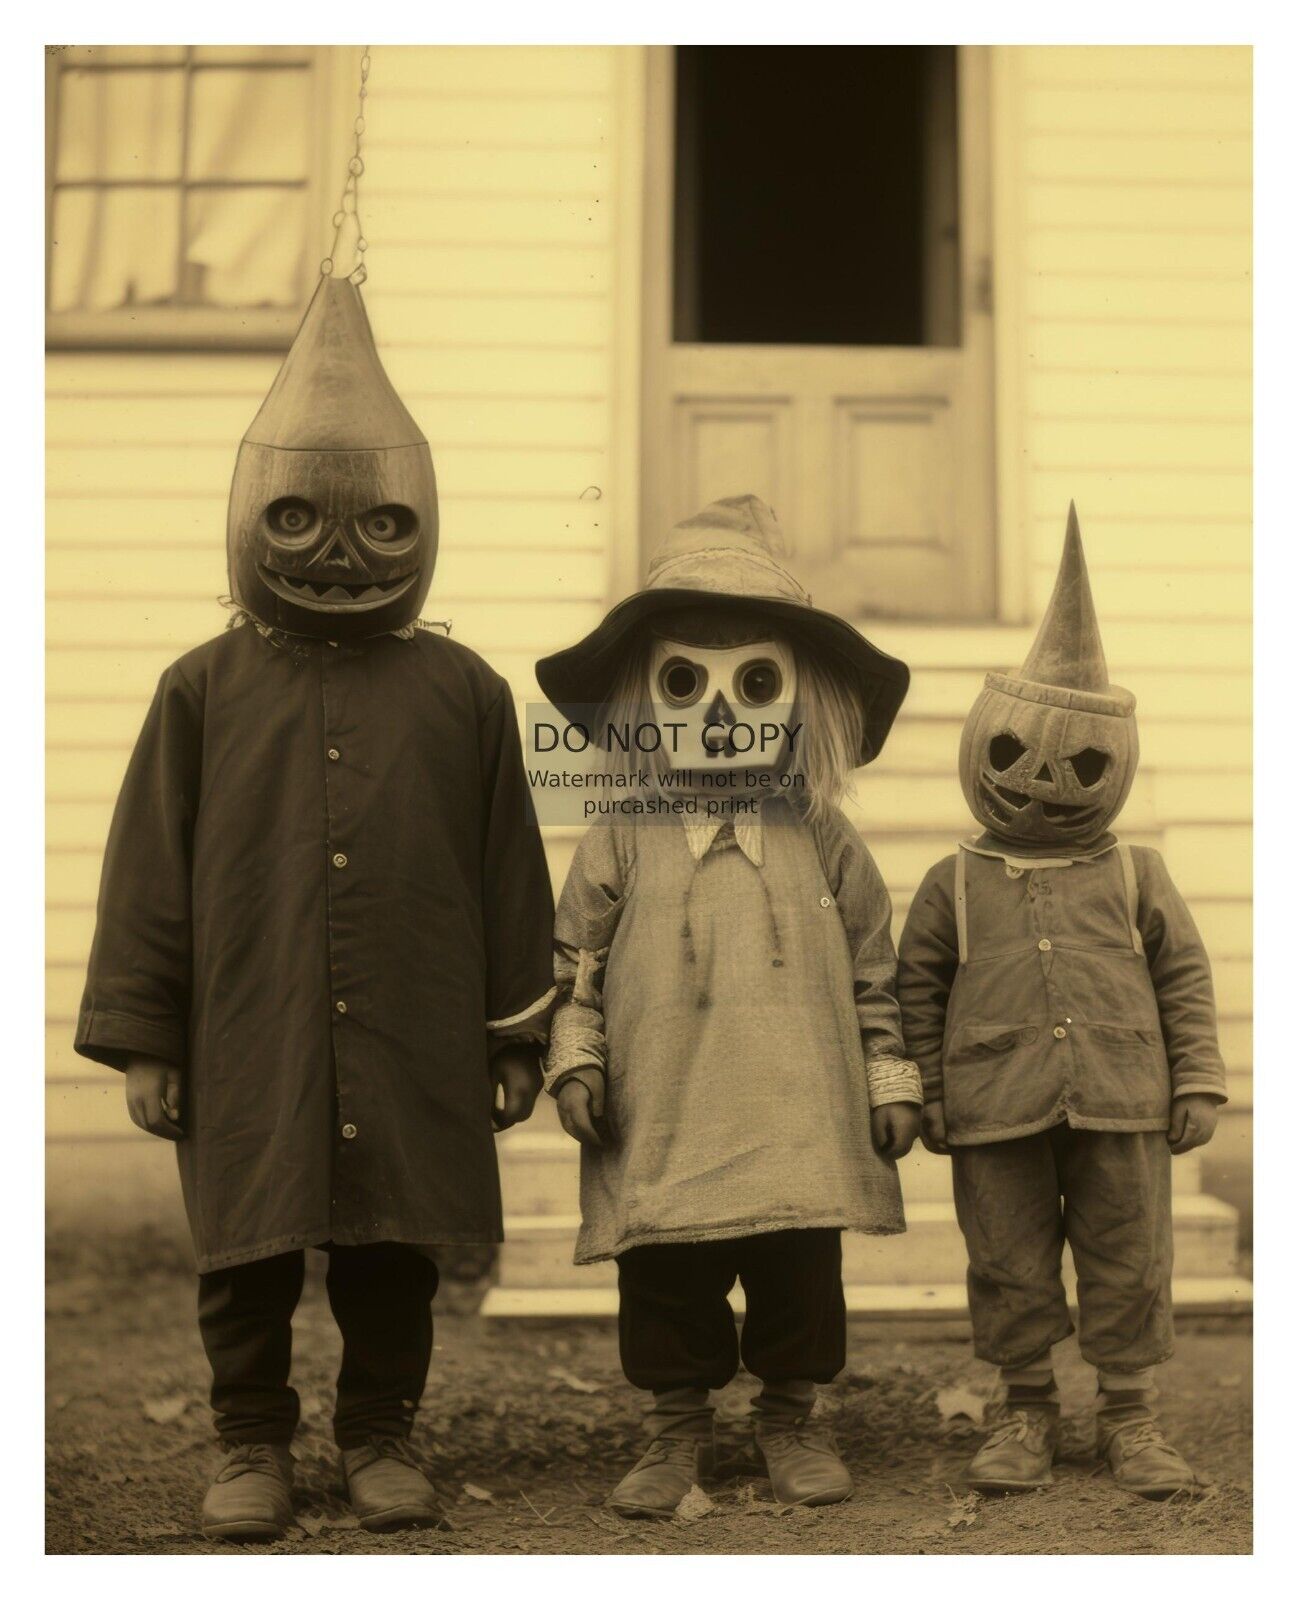 CREEPY VINTAGE CHILDREN HALLOWEEN COSTUMES 1930s 8X10 FANTASY PHOTO